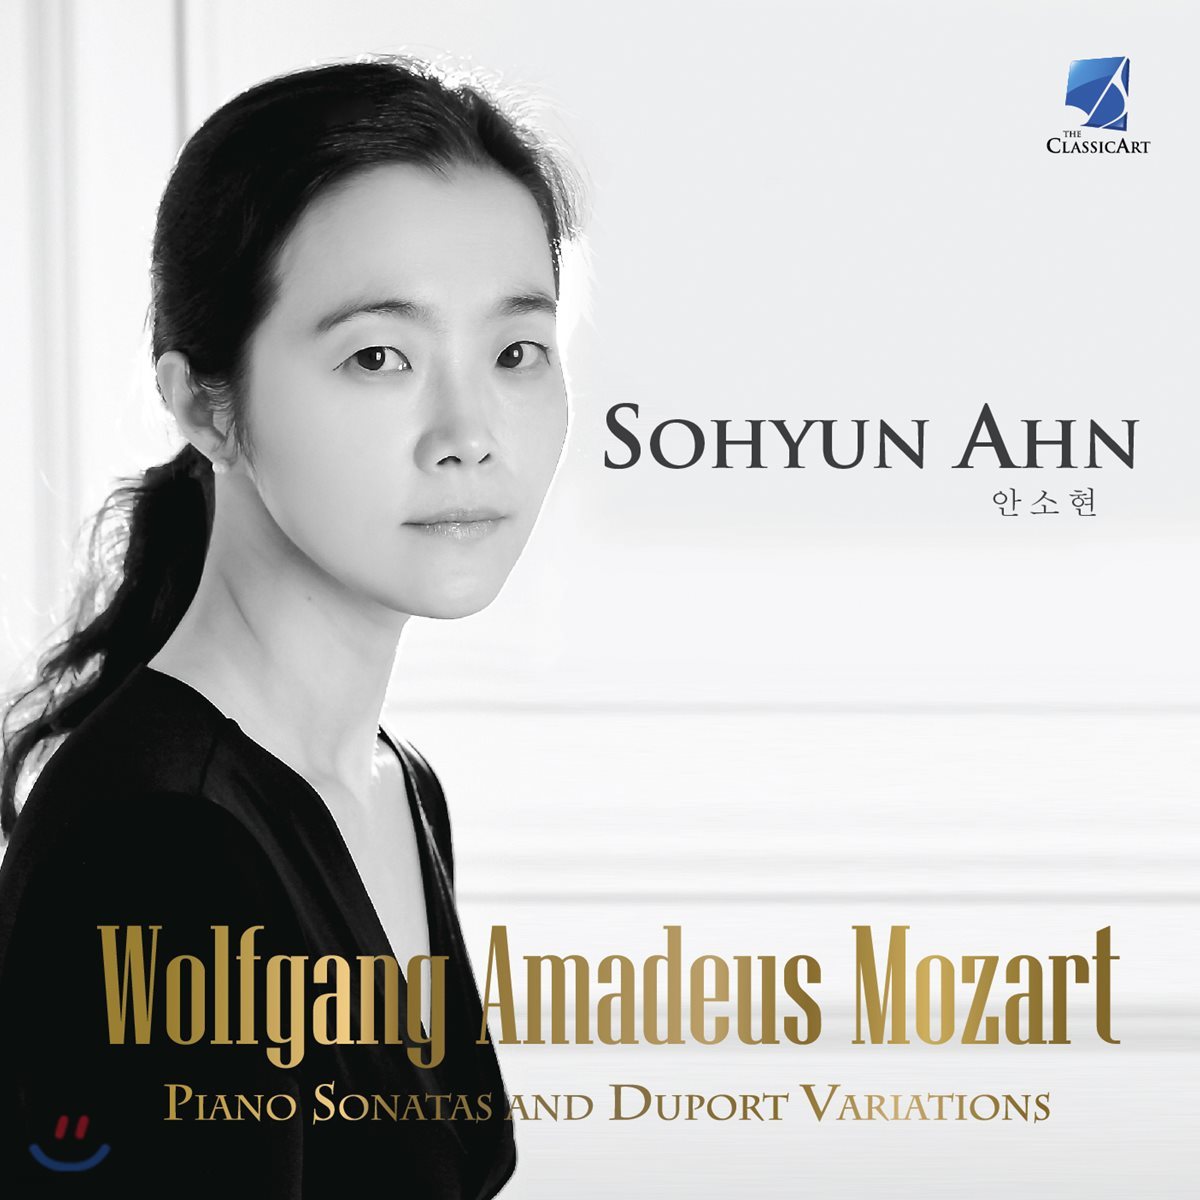 안소현 (Sohyun Ahn) - 모차르트: 피아노 소나타 10-13번, 뒤포르 변주곡 (Mozart: Piano Sonatas and Duport Variations)